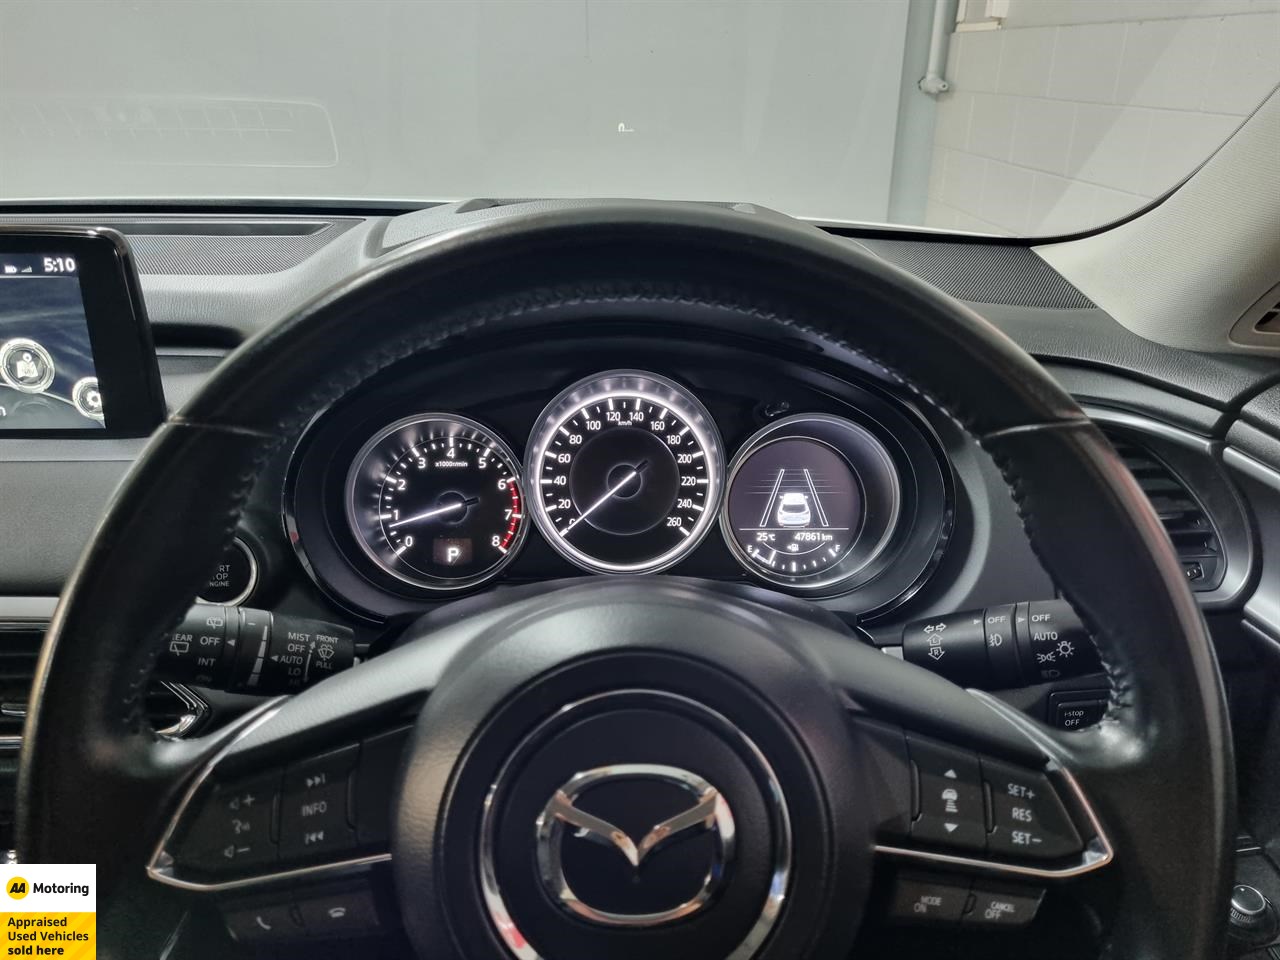 2019 Mazda CX-9